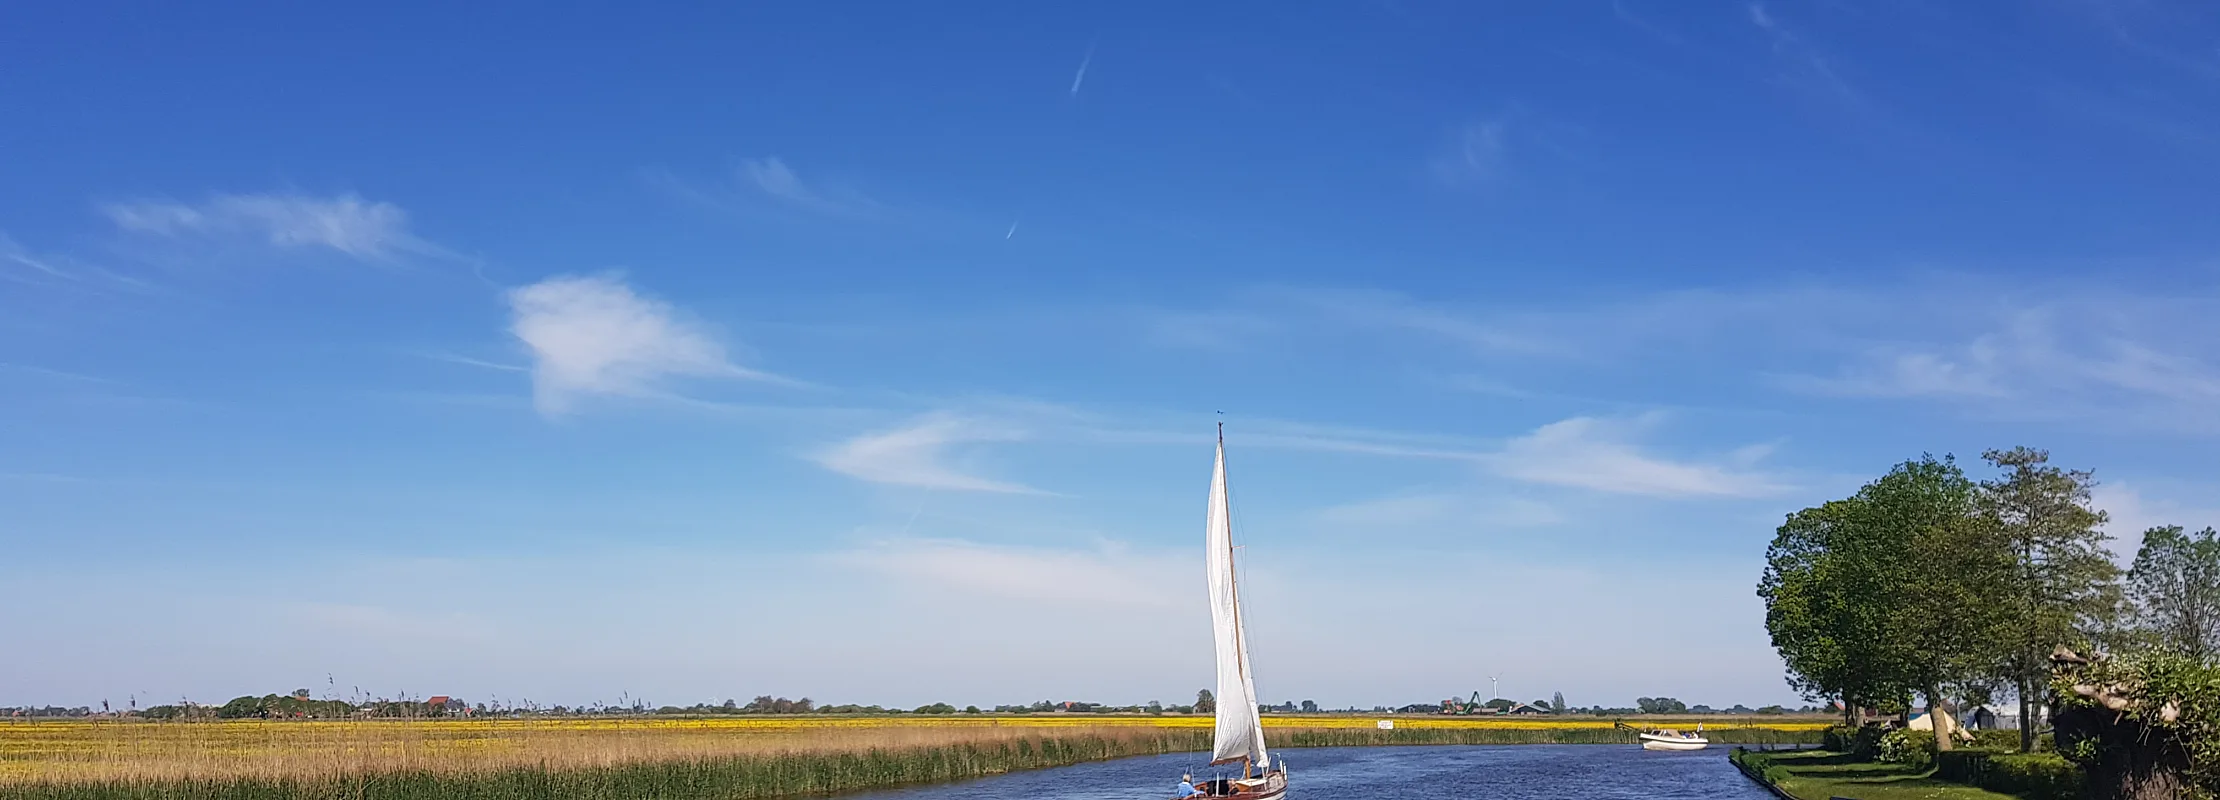 Zeilboot Friese merengebied zuidwest friesland kamperen aan het water